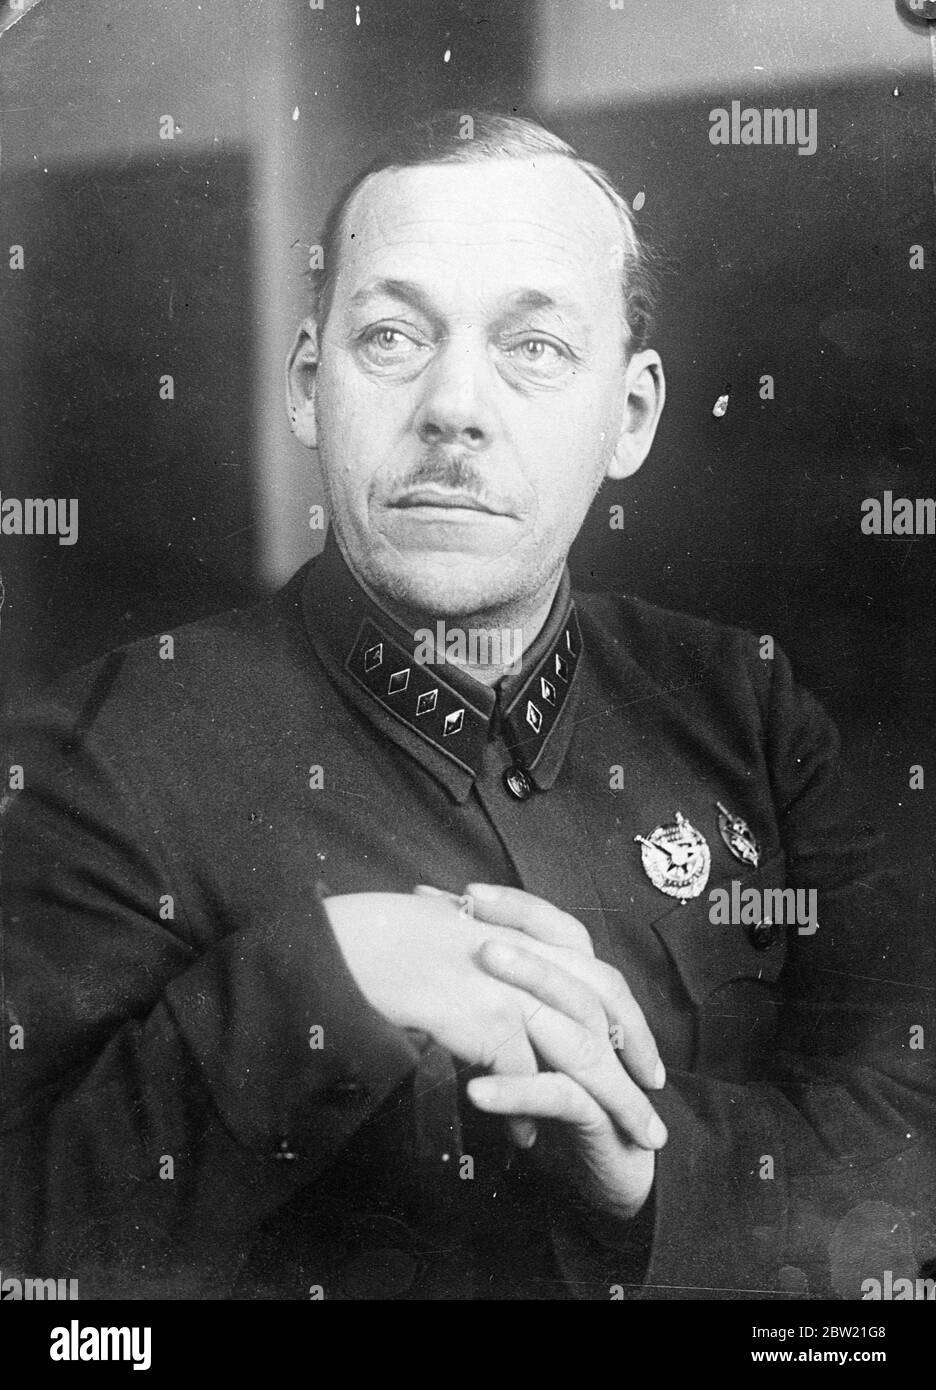 Le général Kashirin, l'un des juges du récent procès des Tukhachevsky martiaux et de sept autres chefs de l'armée soviétique, le général Kashirin a été transféré à un poste sous-déclaré. Moscou, Russie 26 juillet 1937. Banque D'Images